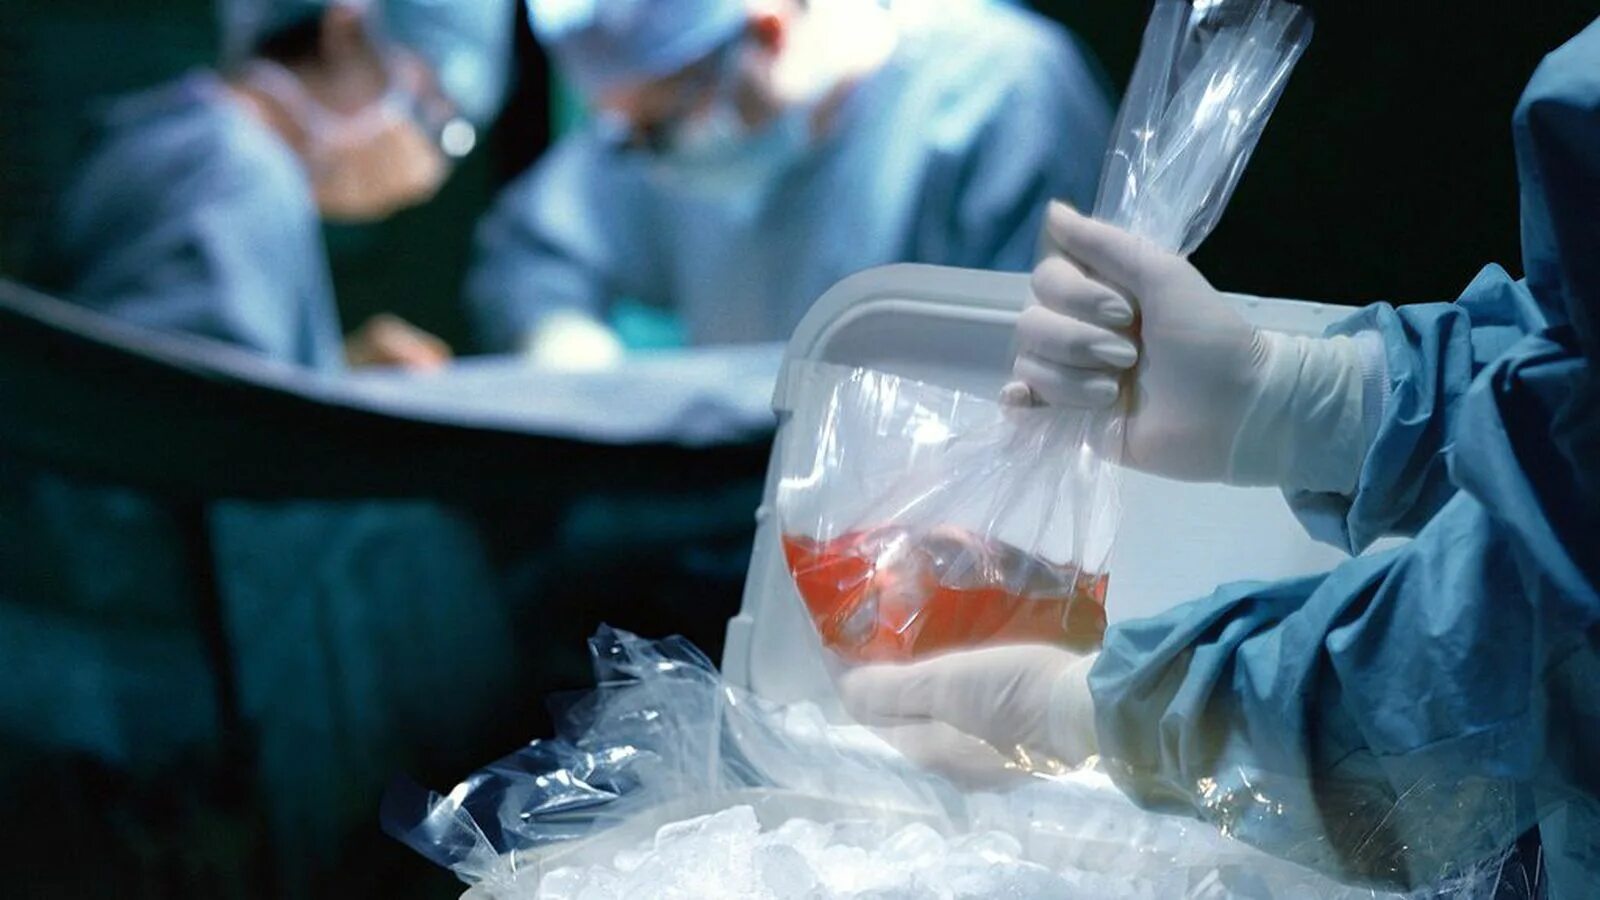 Трансплантация органов и тканей. Консервирование тканей и органов. Трансплантация органов человека. Трансплантация органов и тканей от живого донора